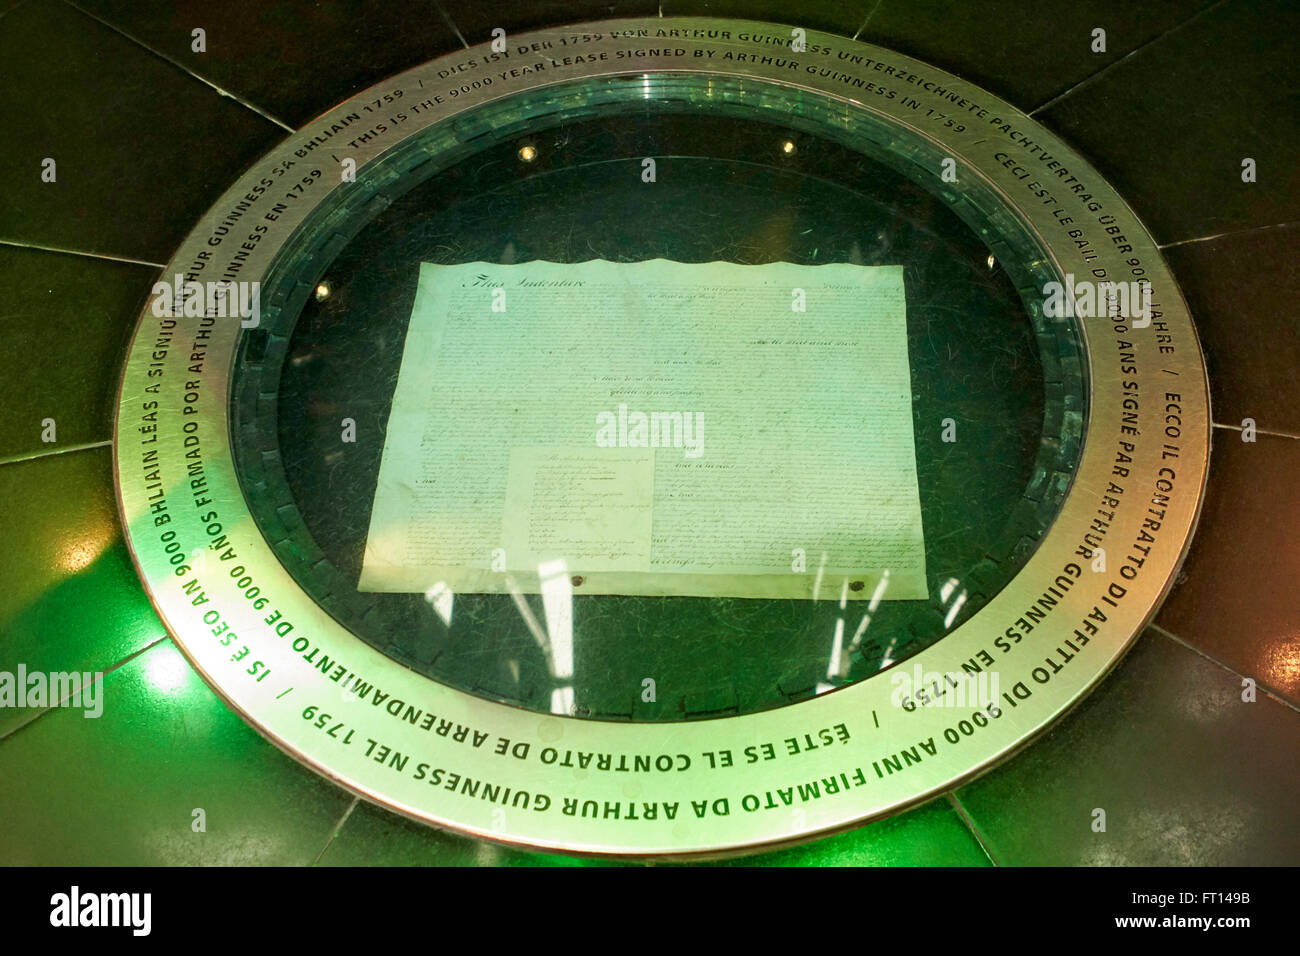 Copia di Arthur Guinness anno 9000 in leasing nella Guinness Storehouse Dublino Irlanda Foto Stock